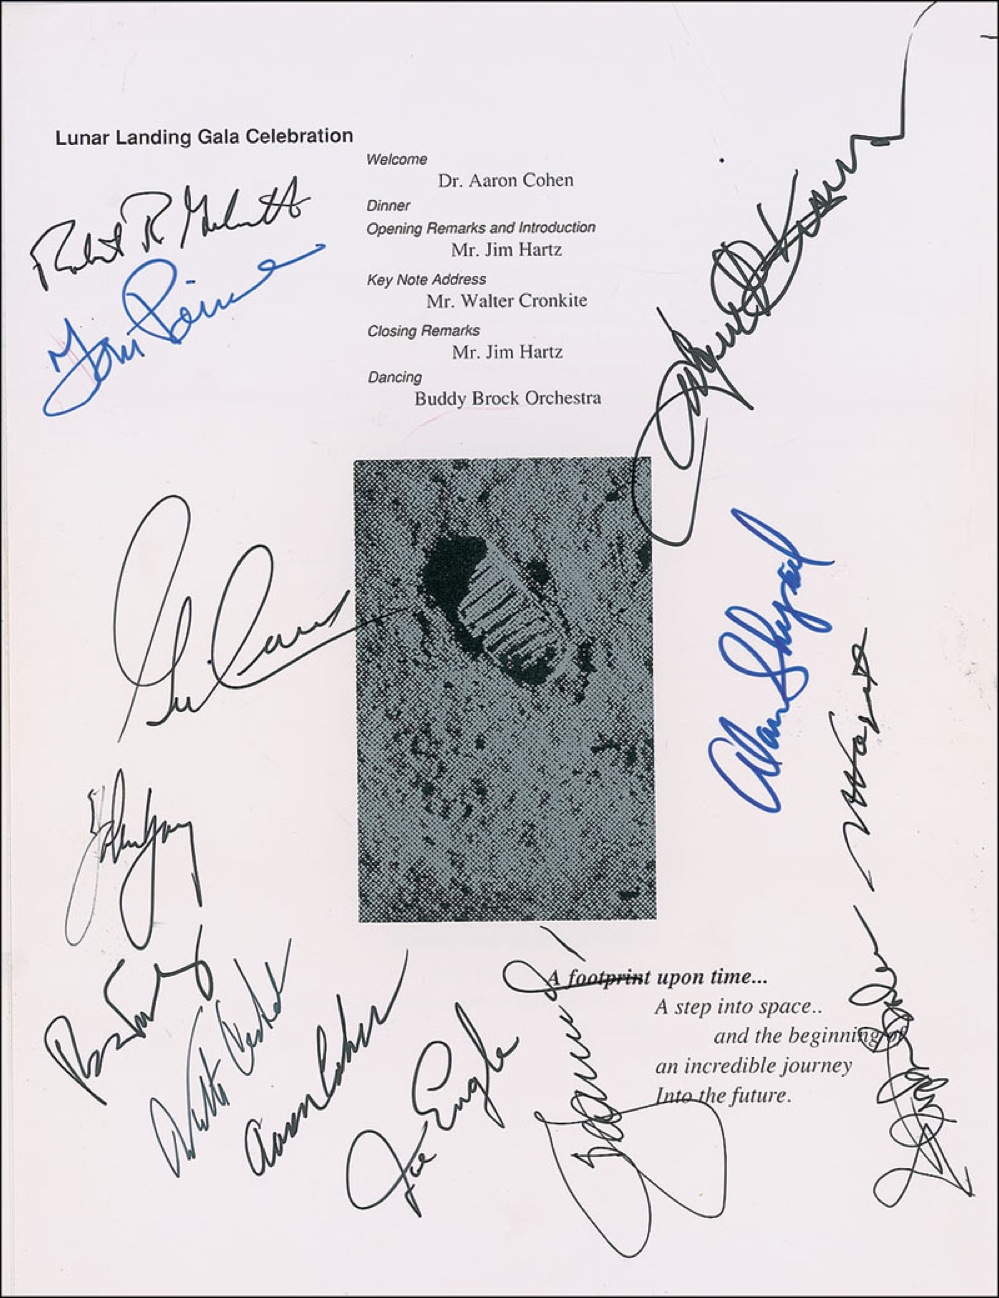 Lot #413 Apollo 11 Anniversary